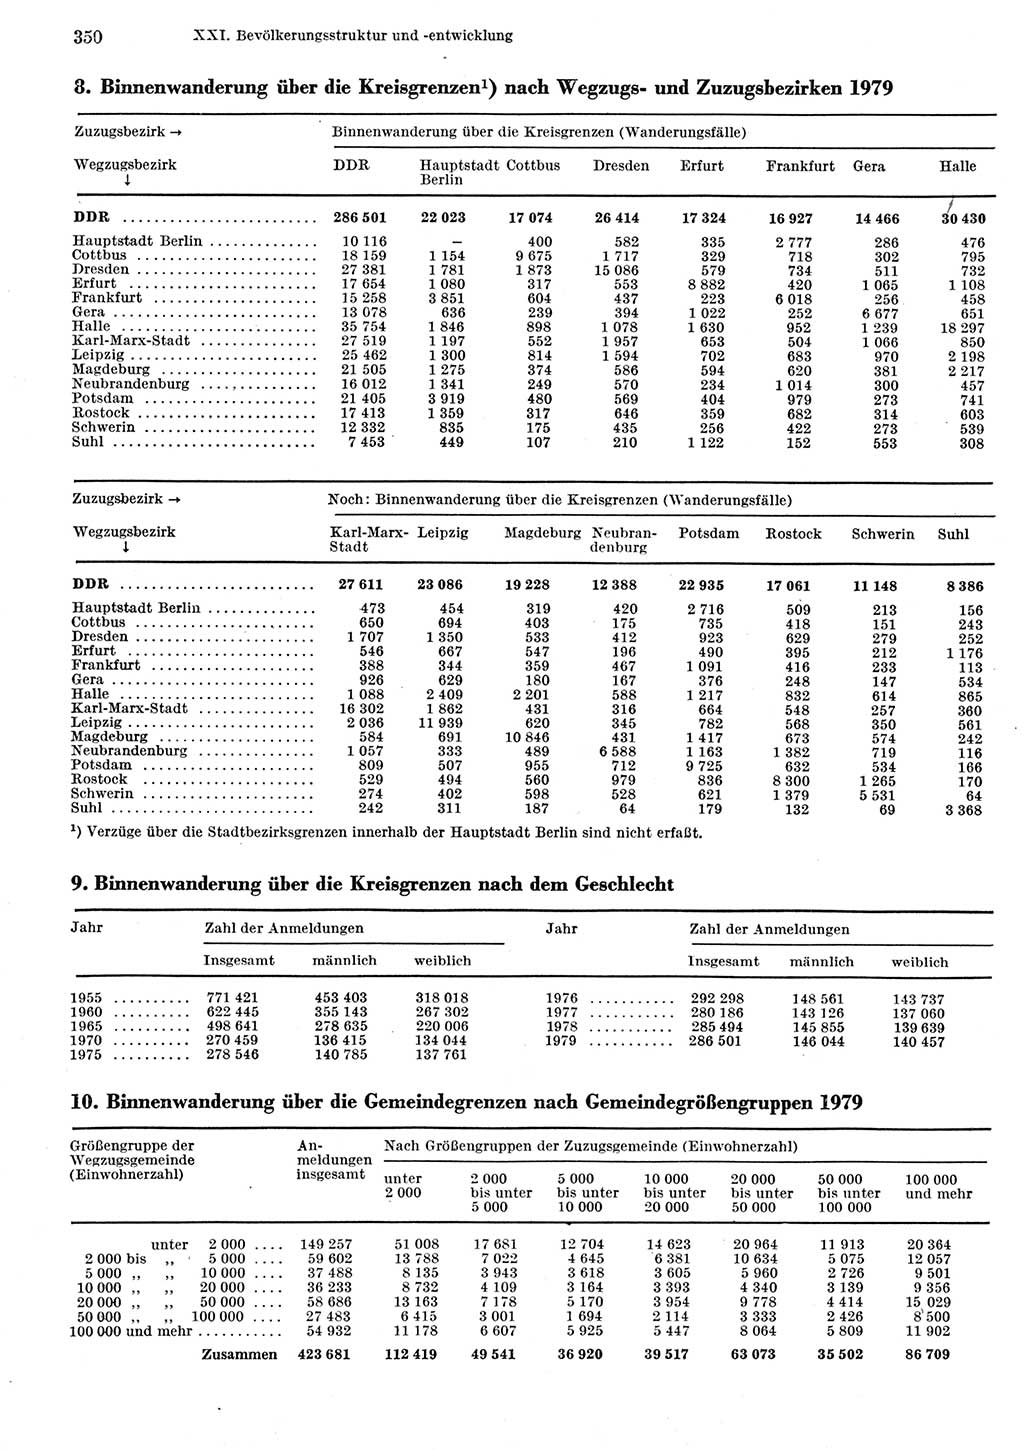 Statistisches Jahrbuch der Deutschen Demokratischen Republik (DDR) 1981, Seite 350 (Stat. Jb. DDR 1981, S. 350)